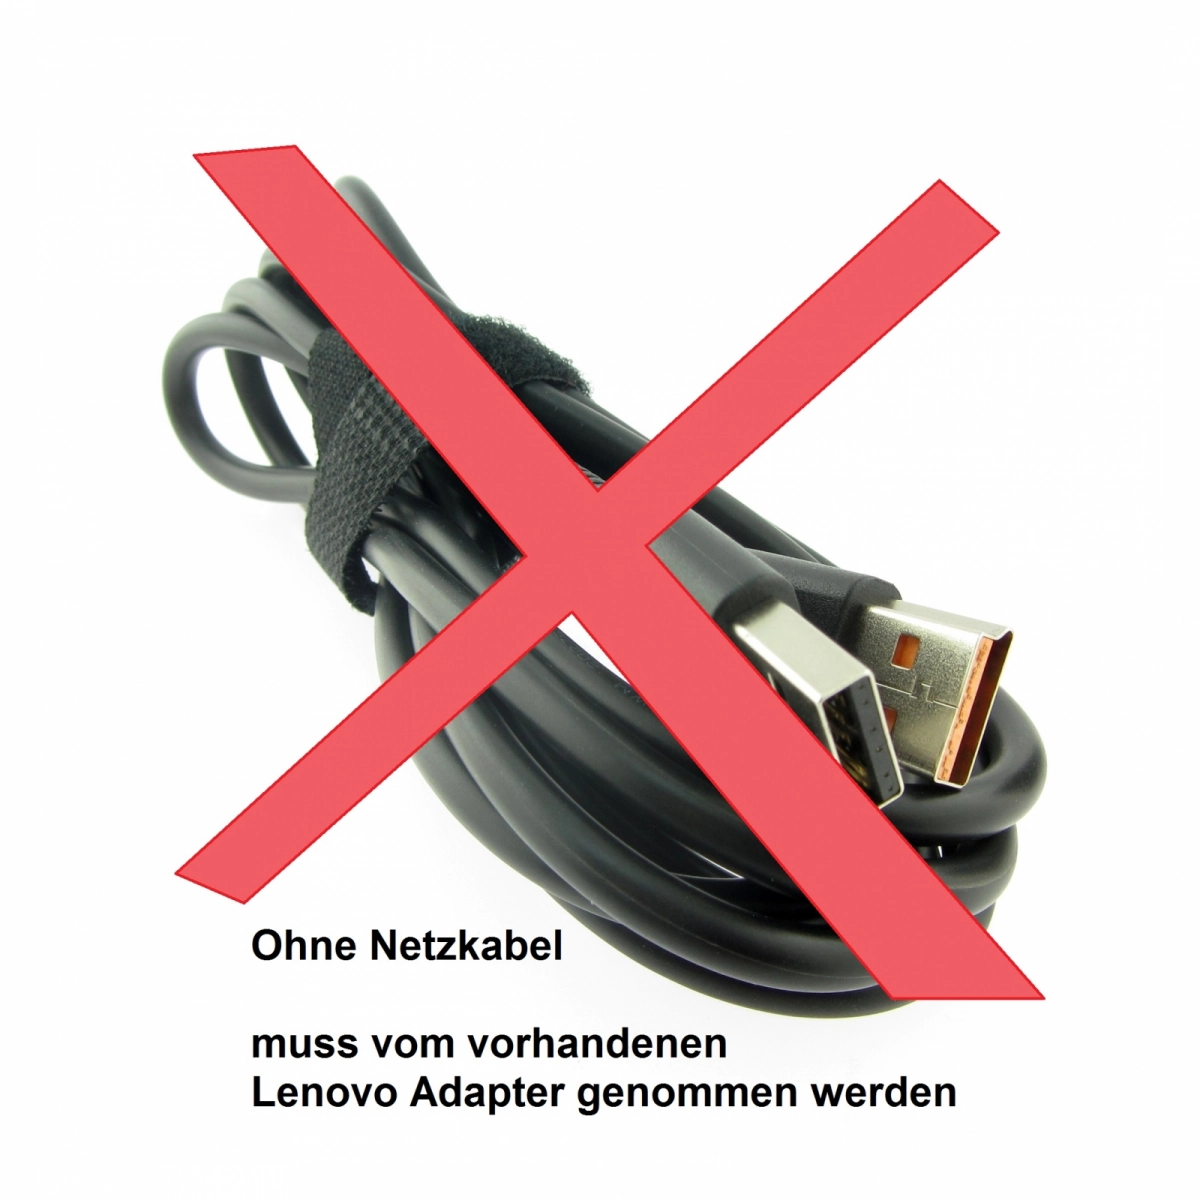 Original Netzteil für LENOVO ADL40WCA 36200579, 20V, 2A, Stecker USB, ohne USB-Kabel